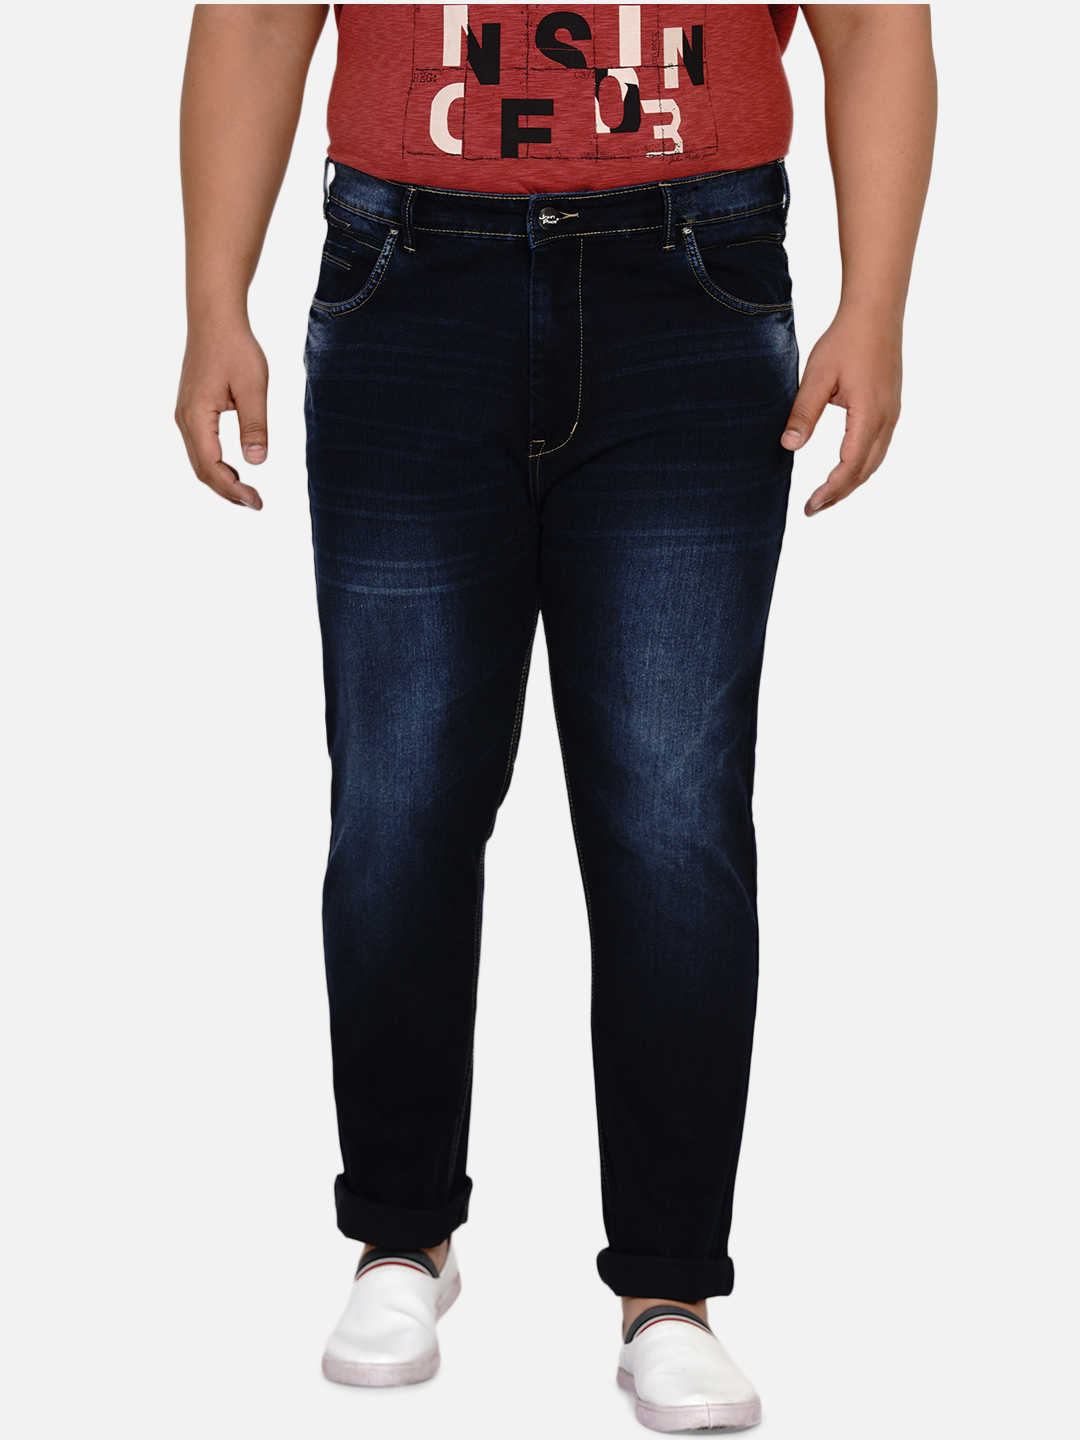 affordables/jeans/EJPJ25005/ejpj25005-3.jpg